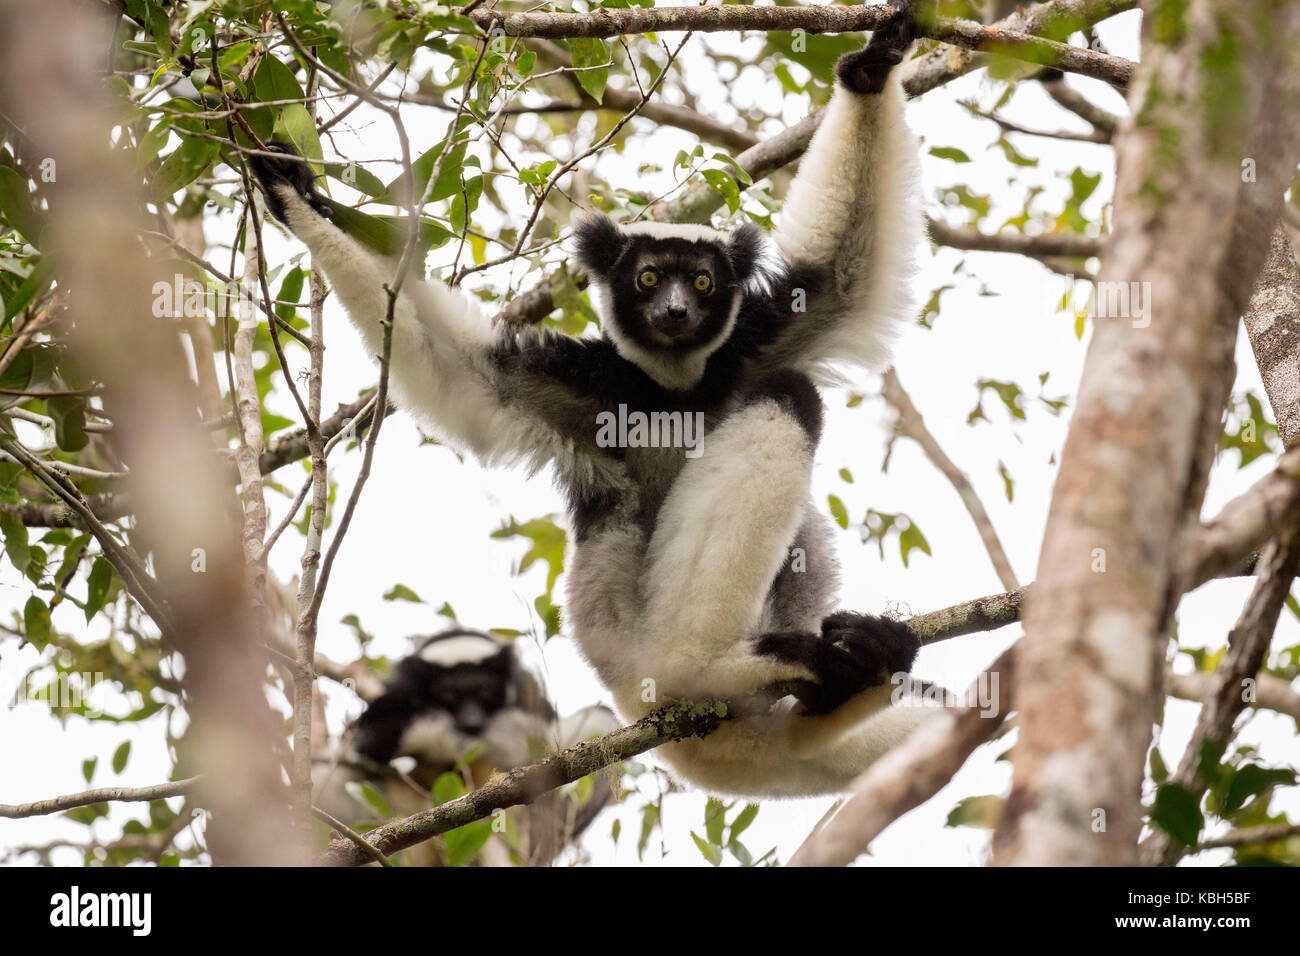 Africa, Madgascar, Andasibe Mantadia National Park, wild Indri (Indri indri), the world's largest lemur sitting in tree. Stock Photo